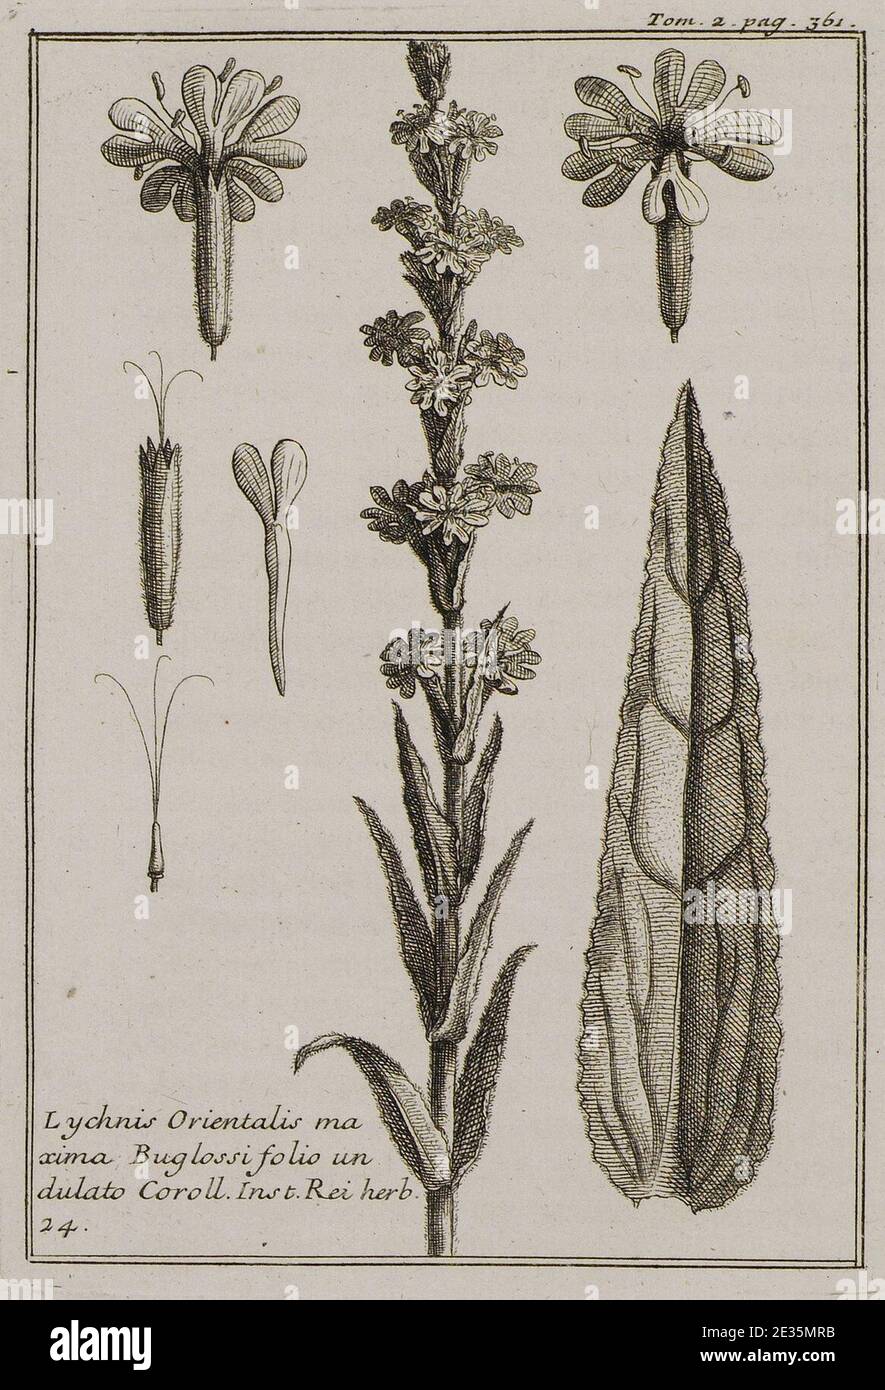 Lychnis Orientalis maxima Buglossi folio undulato Coroll Inst Rei herb 24 - Tournefort Joseph Pitton De - 1717. Stock Photo